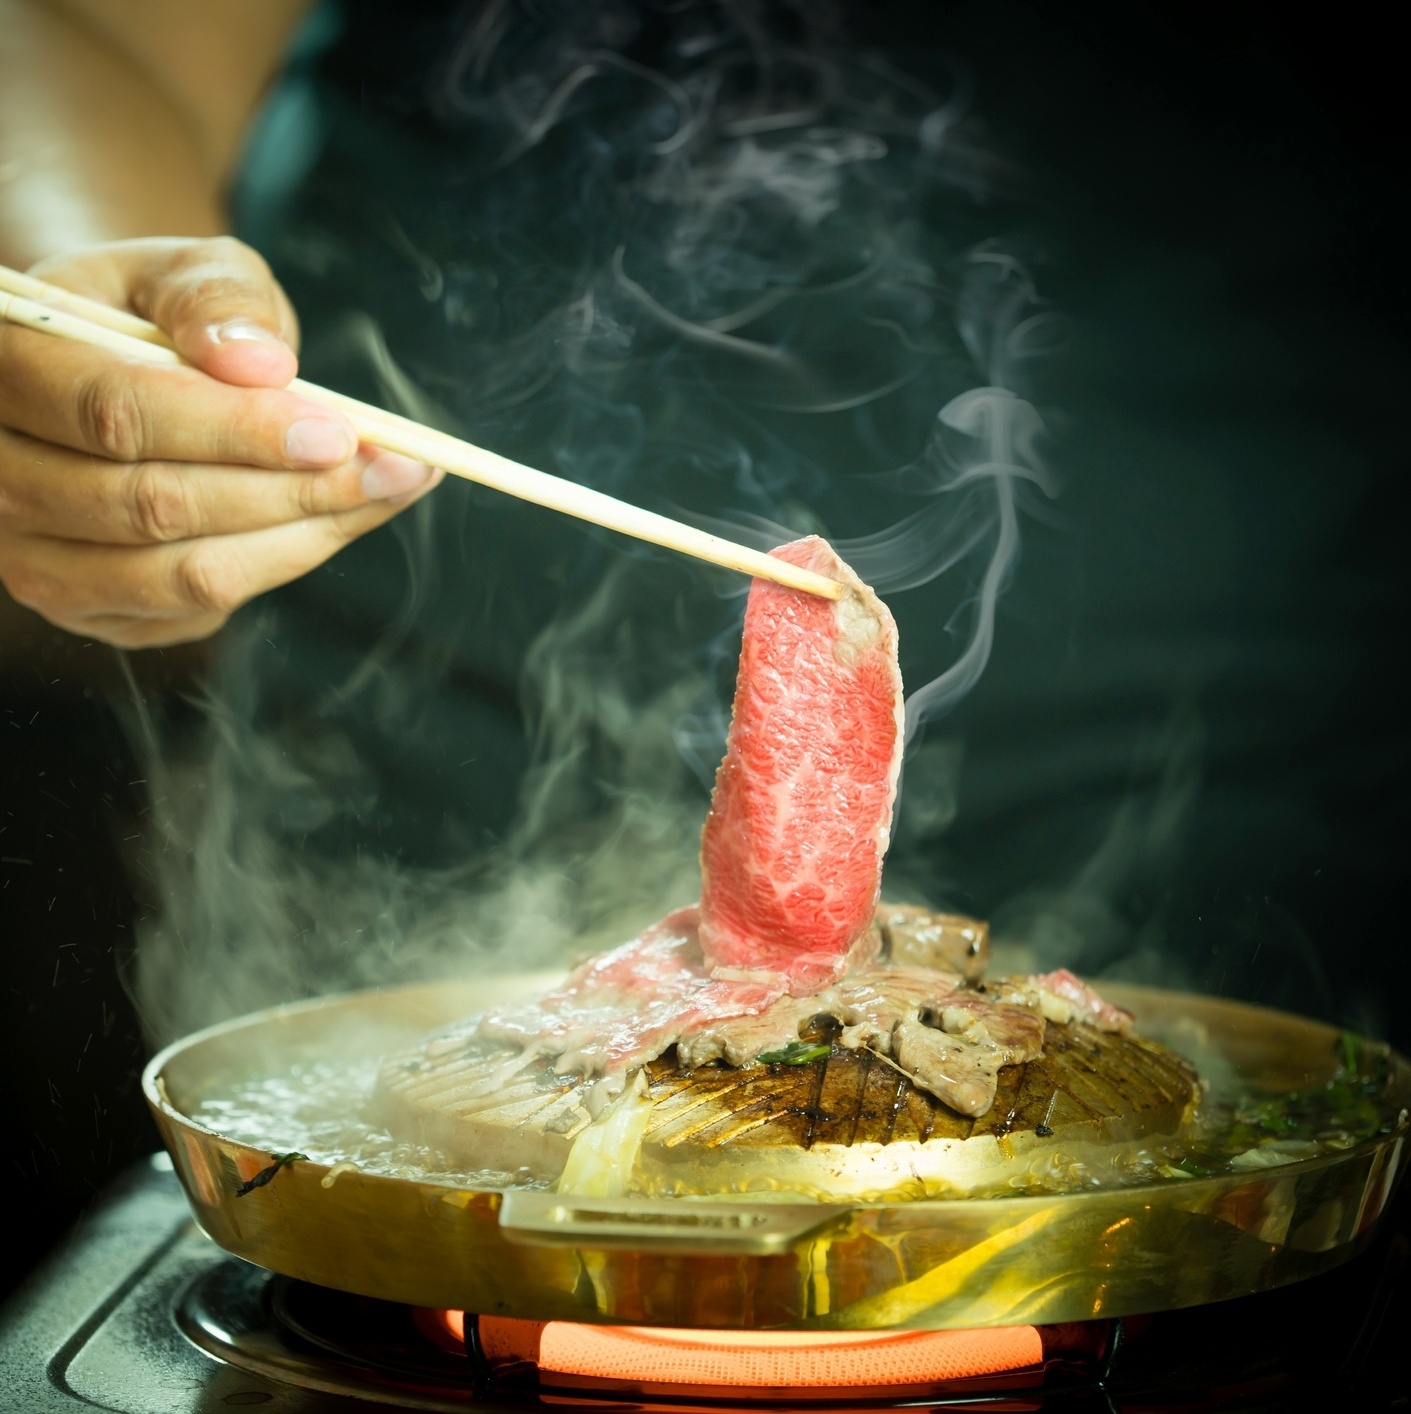 Comer churrasco de palitinho? Preparo coreano de carnes desafia o paladar - 02/02/2021